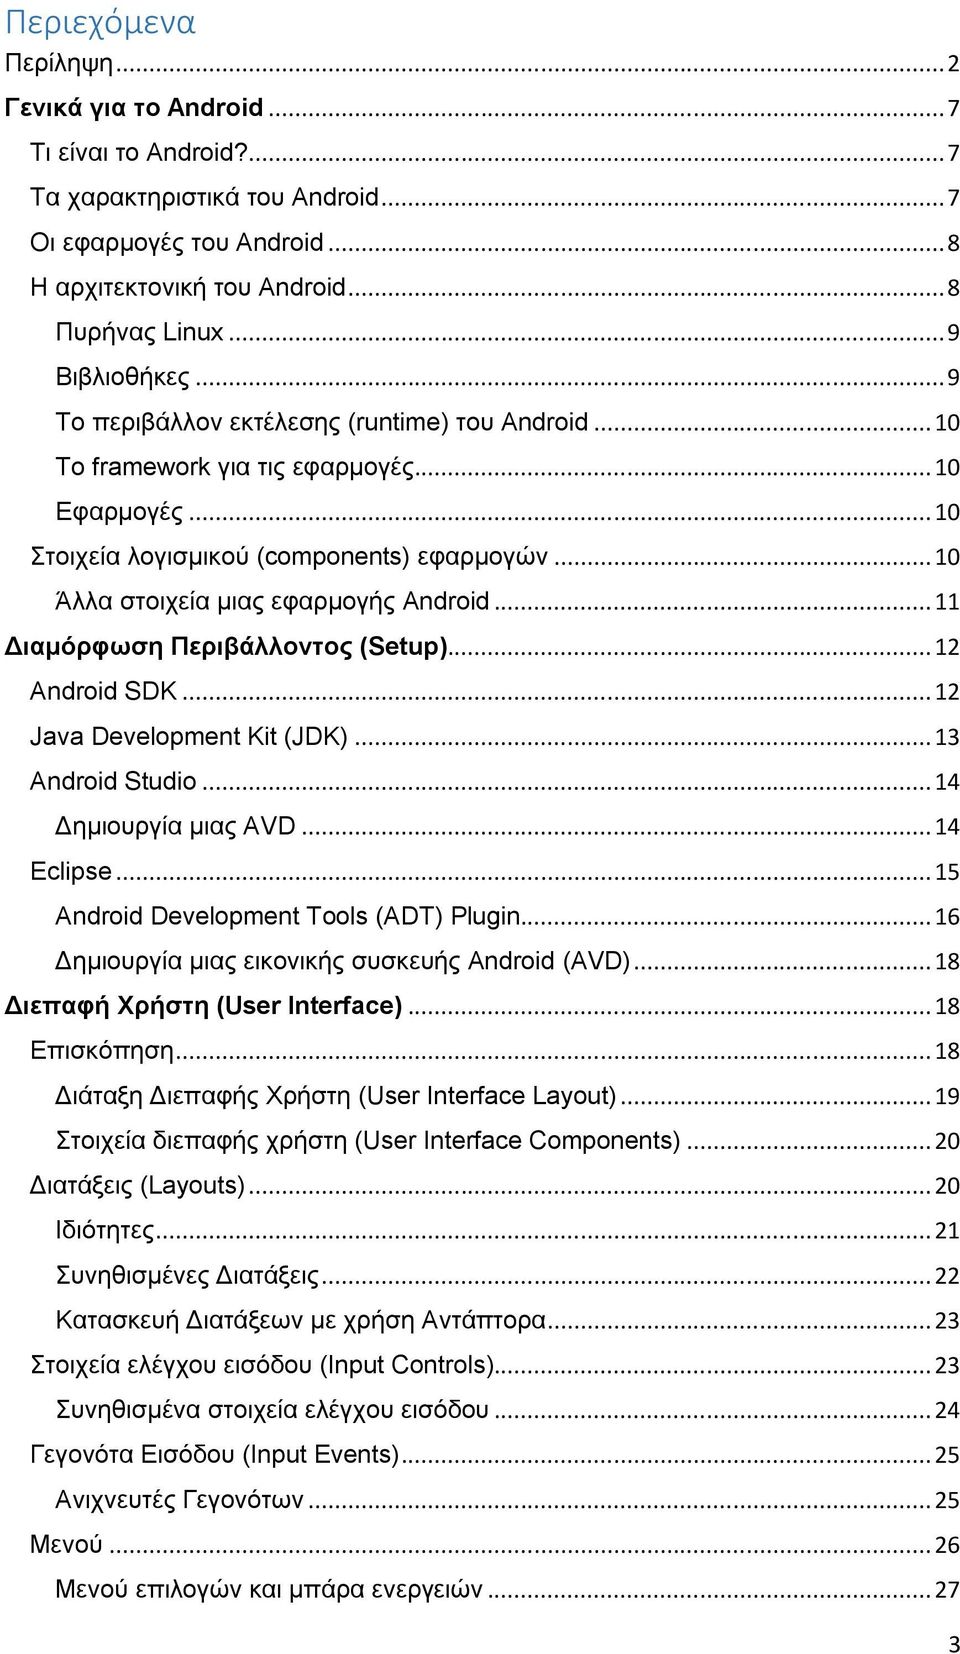 .. 10 Άλλα στοιχεία μιας εφαρμογής Android... 11 Διαμόρφωση Περιβάλλοντος (Setup)... 12 Android SDK... 12 Java Development Kit (JDK)... 13 Android Studio... 14 Δημιουργία μιας AVD... 14 Eclipse.